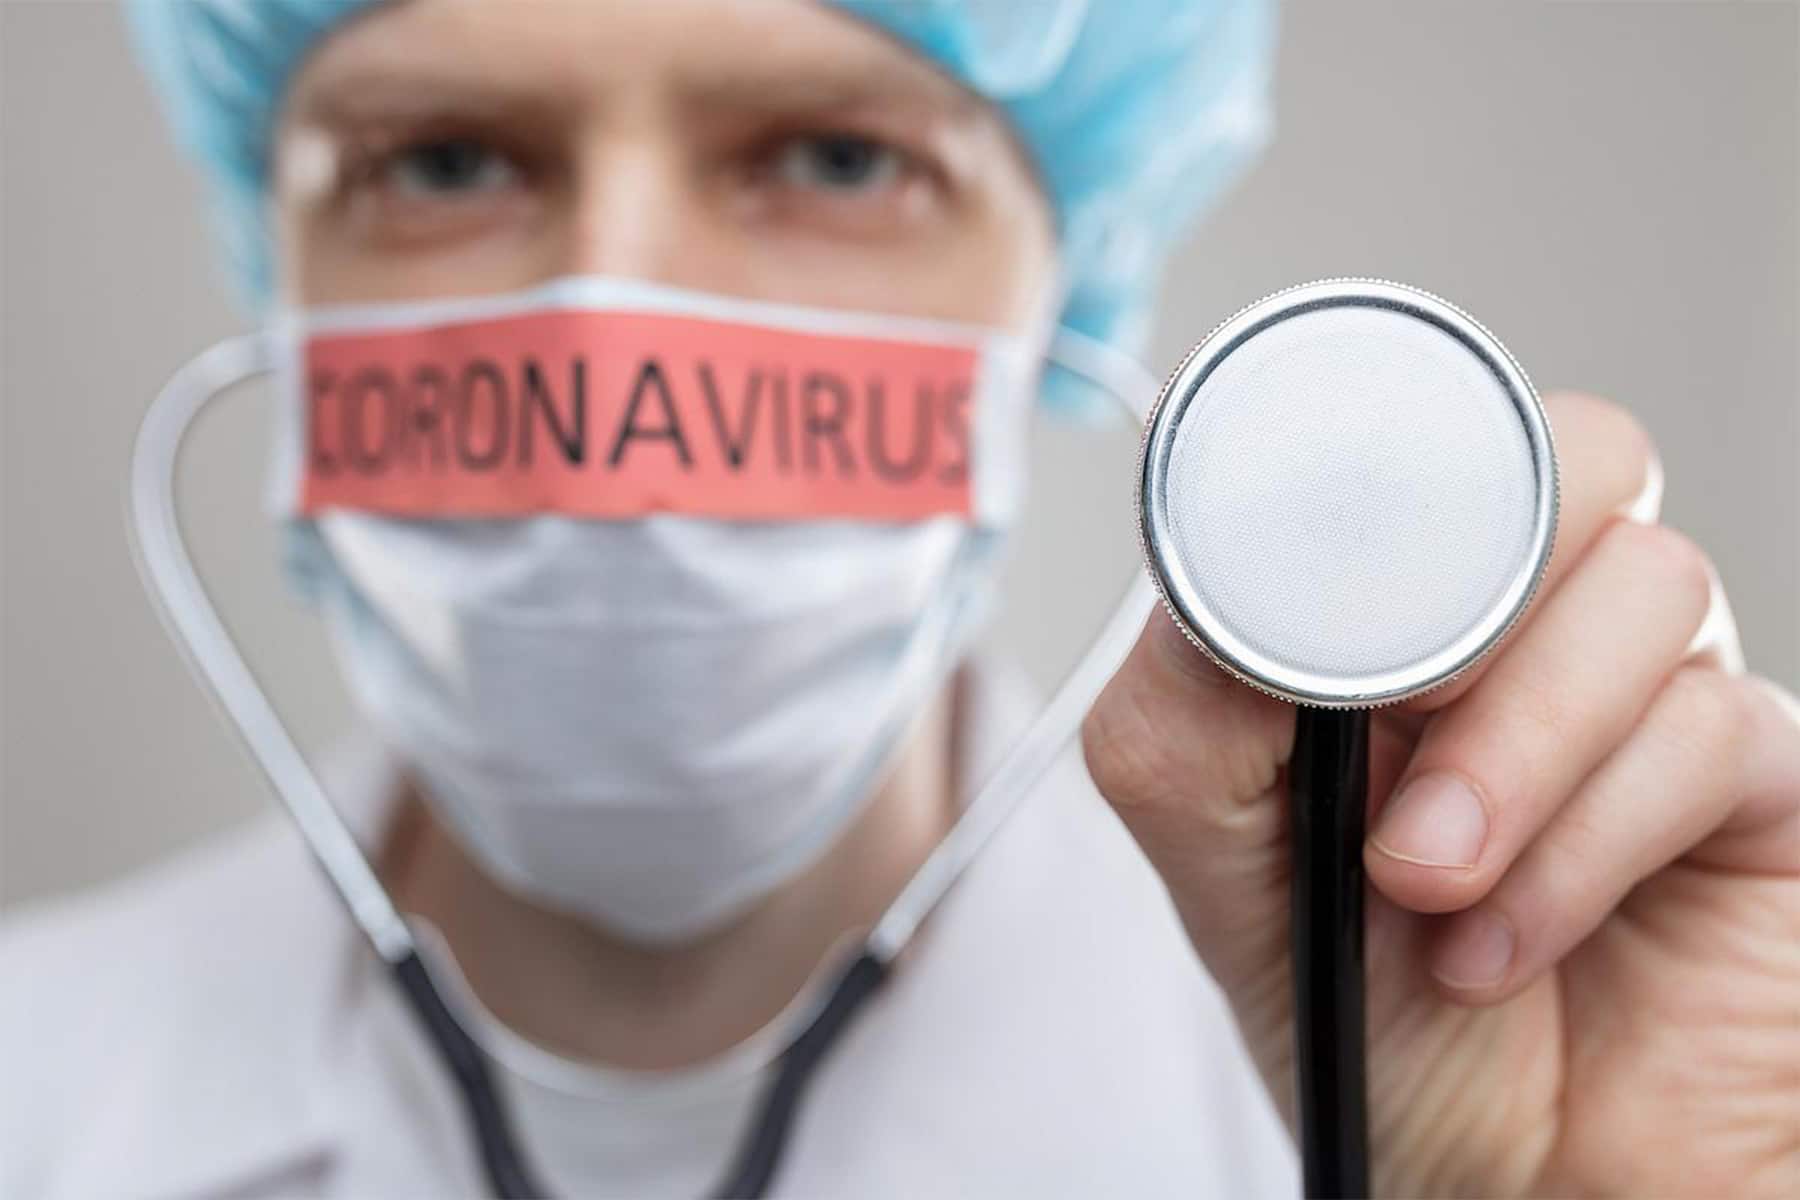 الإصابة بفيروس كورونا والأنفلونزا في نفس الوقت، يمكن أن تزيد من شدة المرض وخطر الوفاة